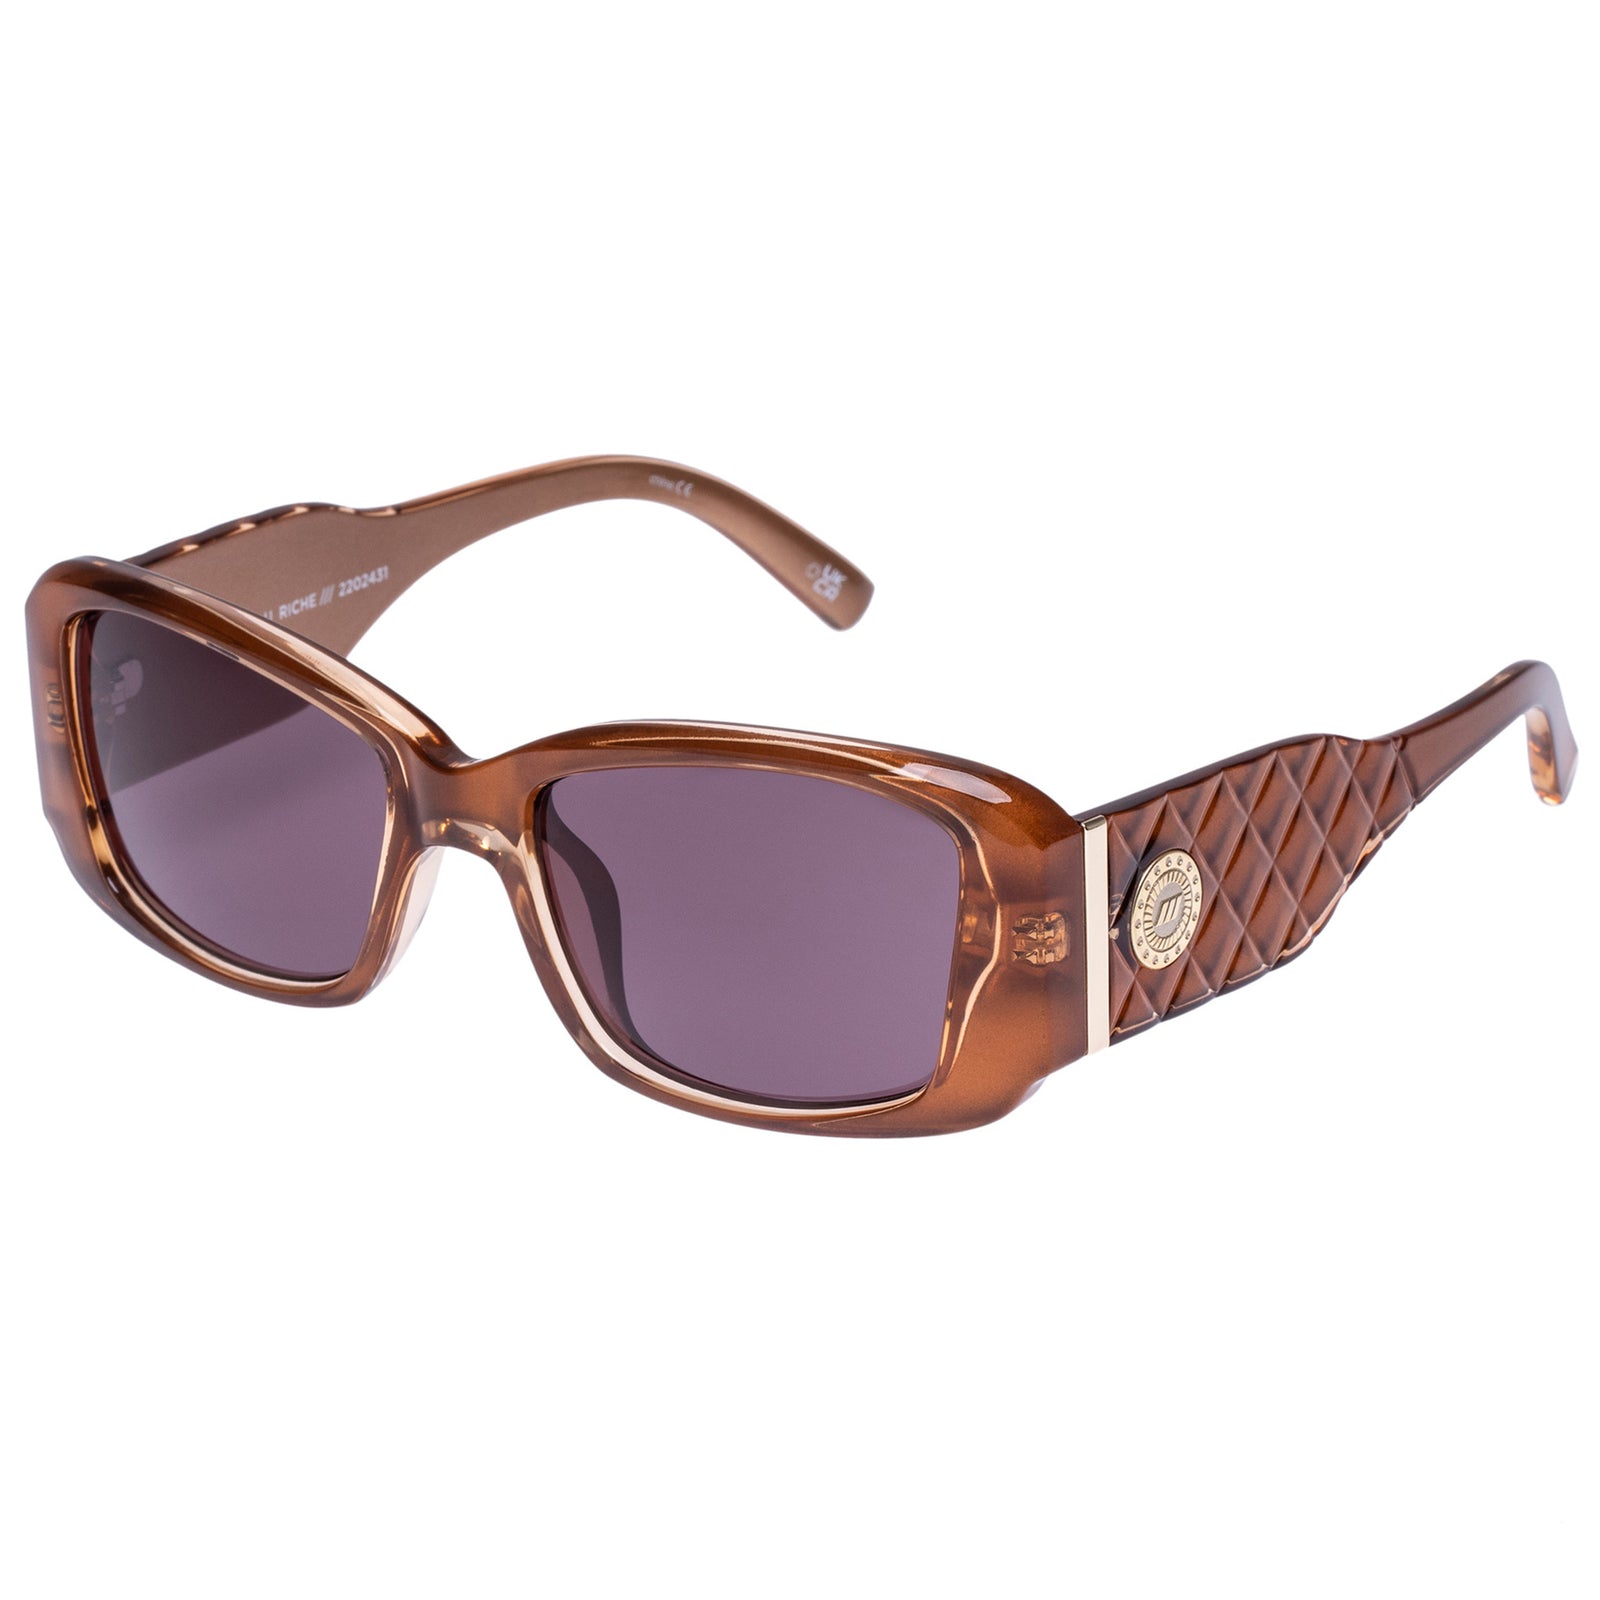 Le Specs Sunglasses - Nouveau Riche - Caramel